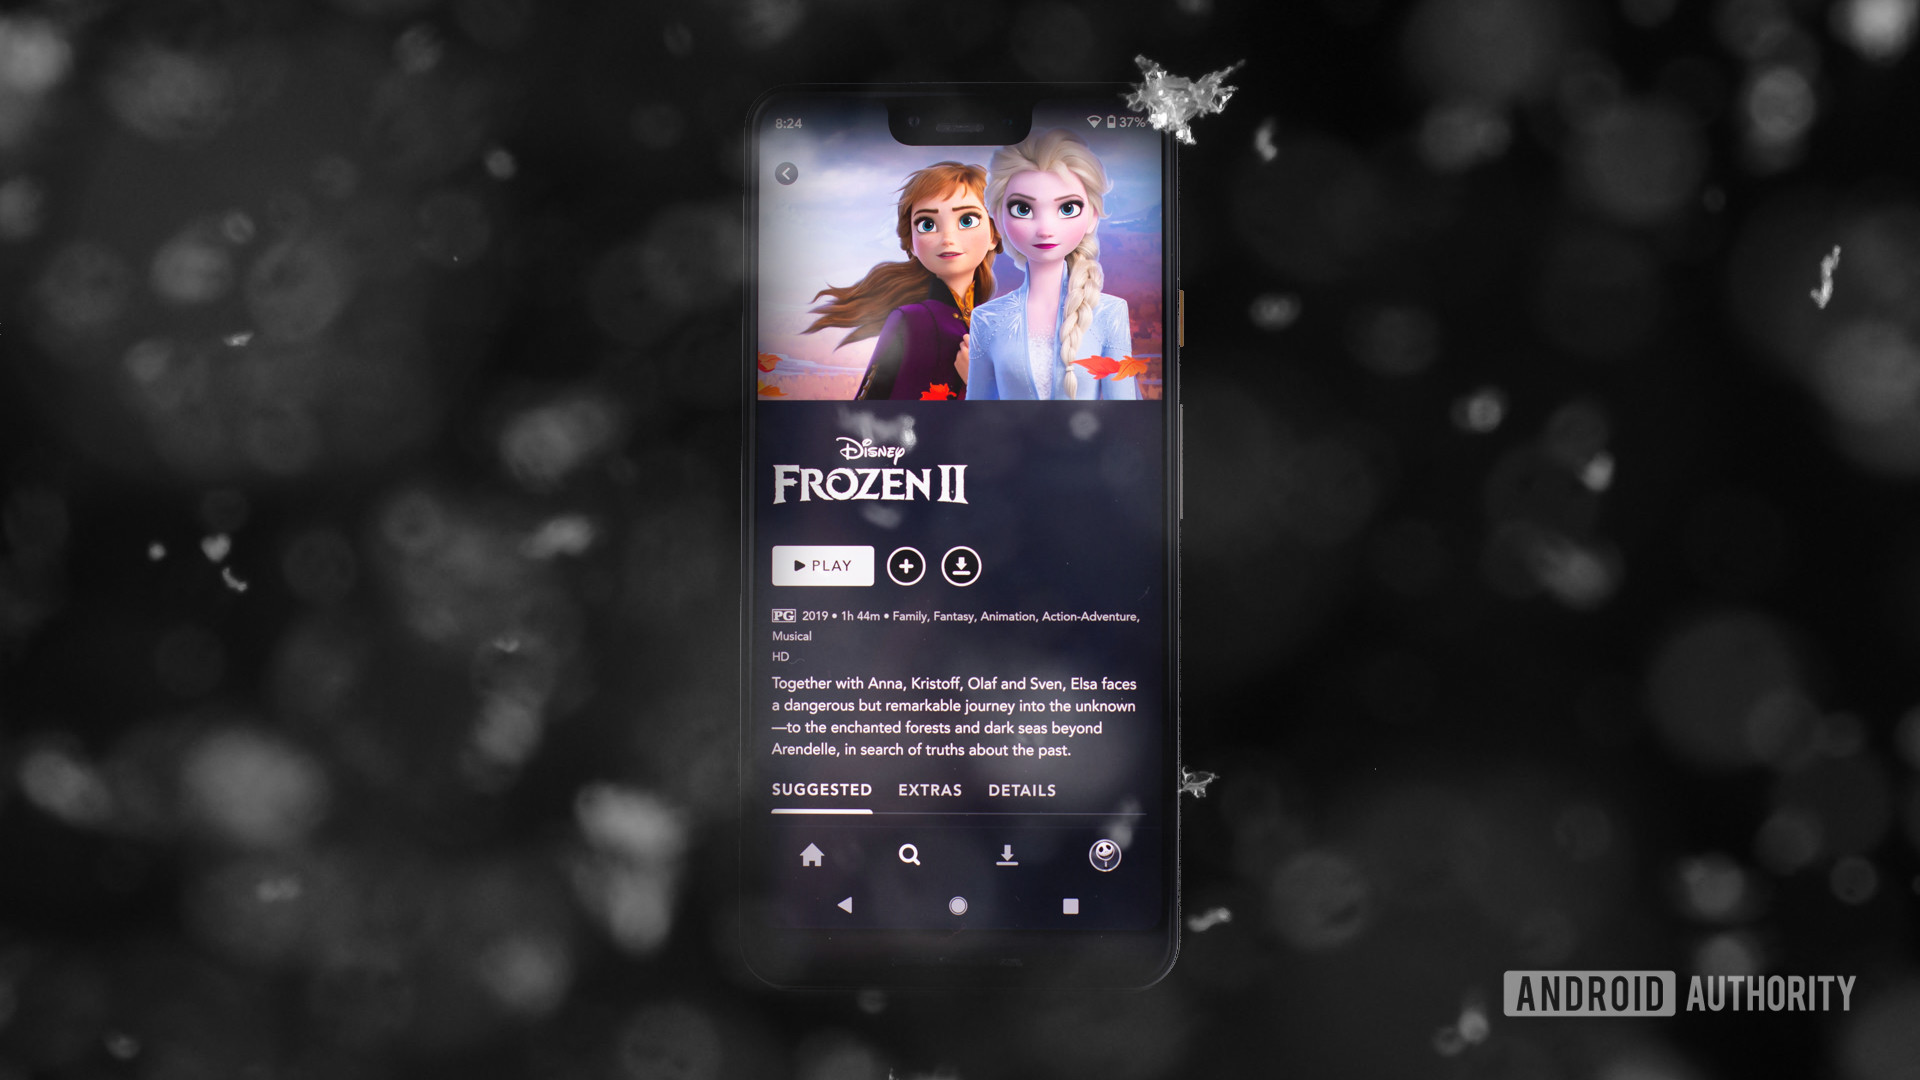 Frozen 2 on Disney Plus app 1